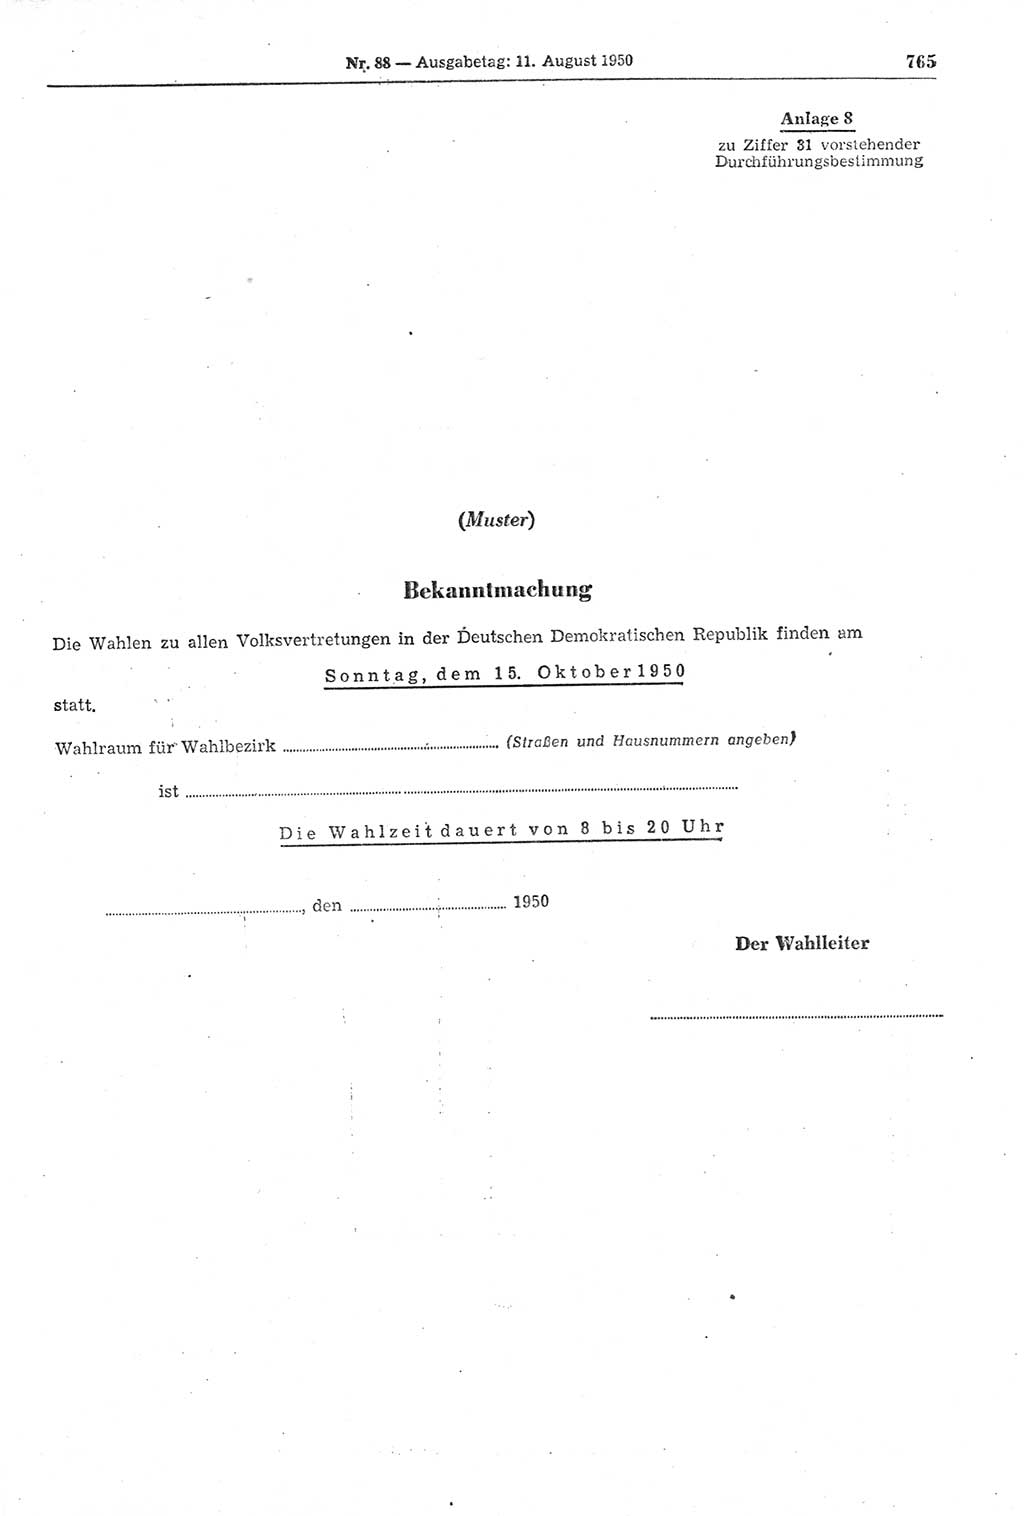 Gesetzblatt (GBl.) der Deutschen Demokratischen Republik (DDR) 1950, Seite 765 (GBl. DDR 1950, S. 765)